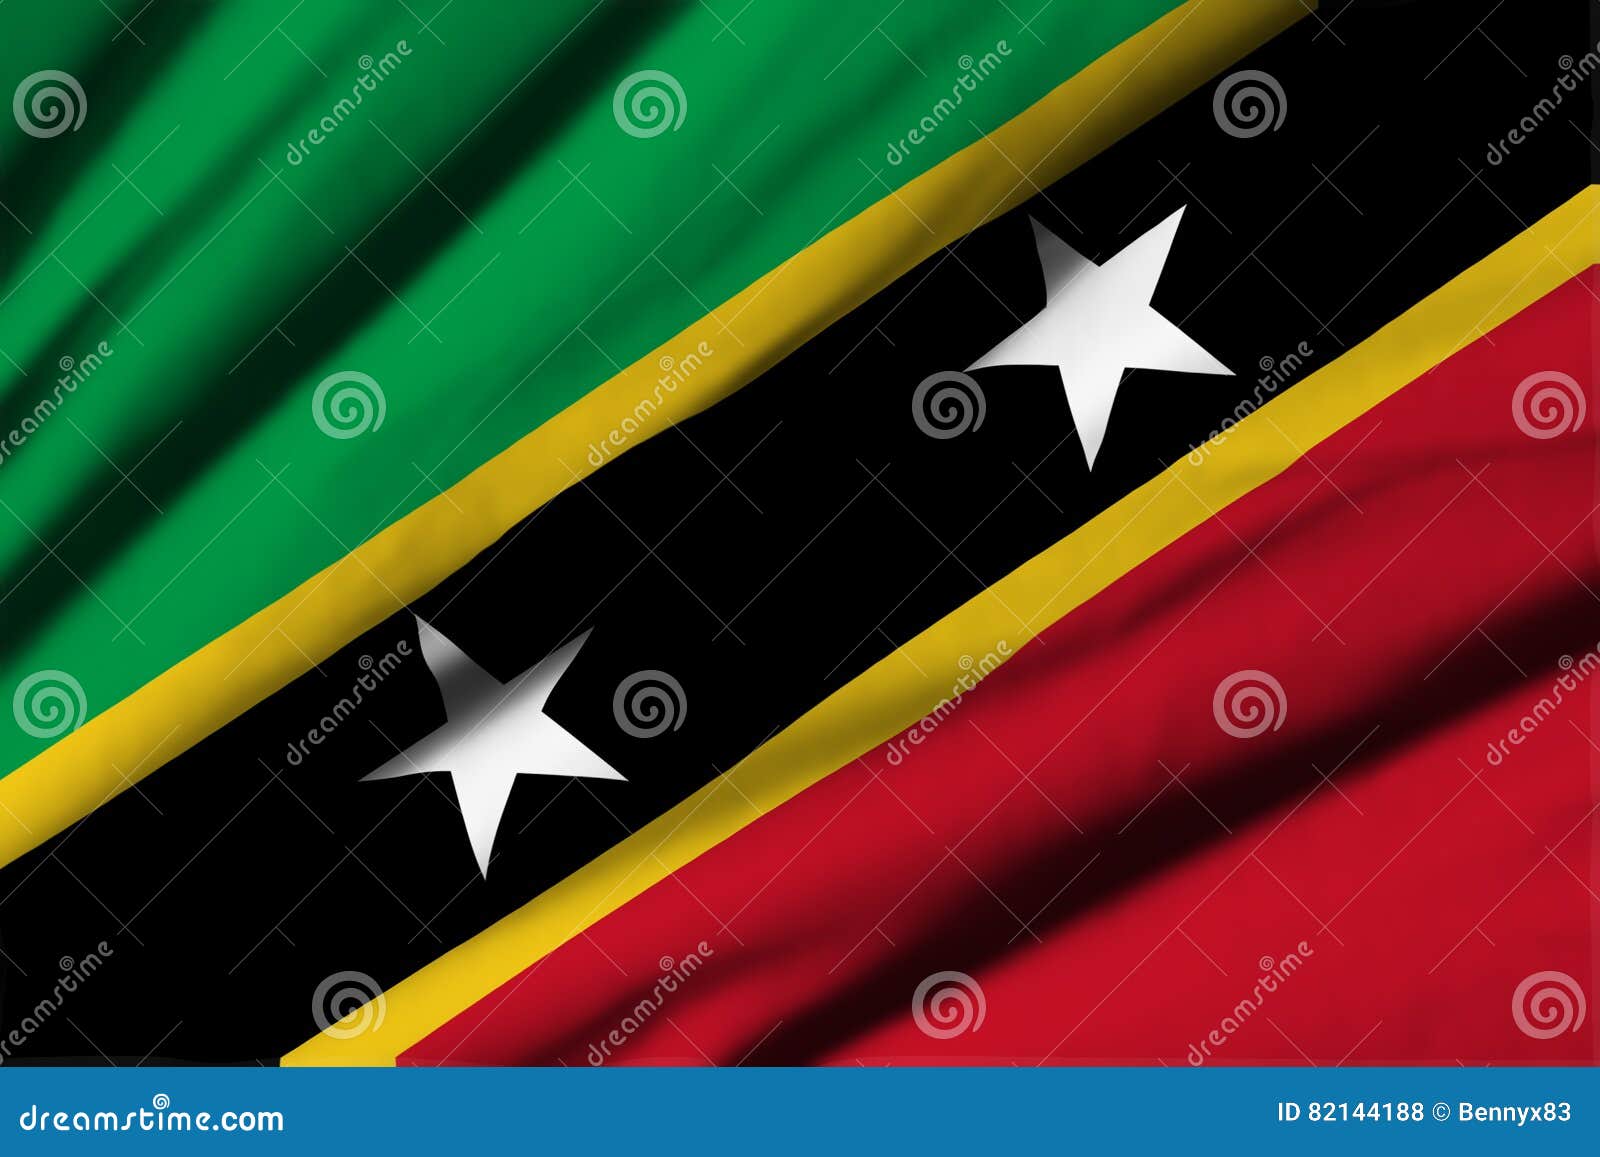 Flag of St. Kitts and Nevis Stock Illustration - Illustration of flag